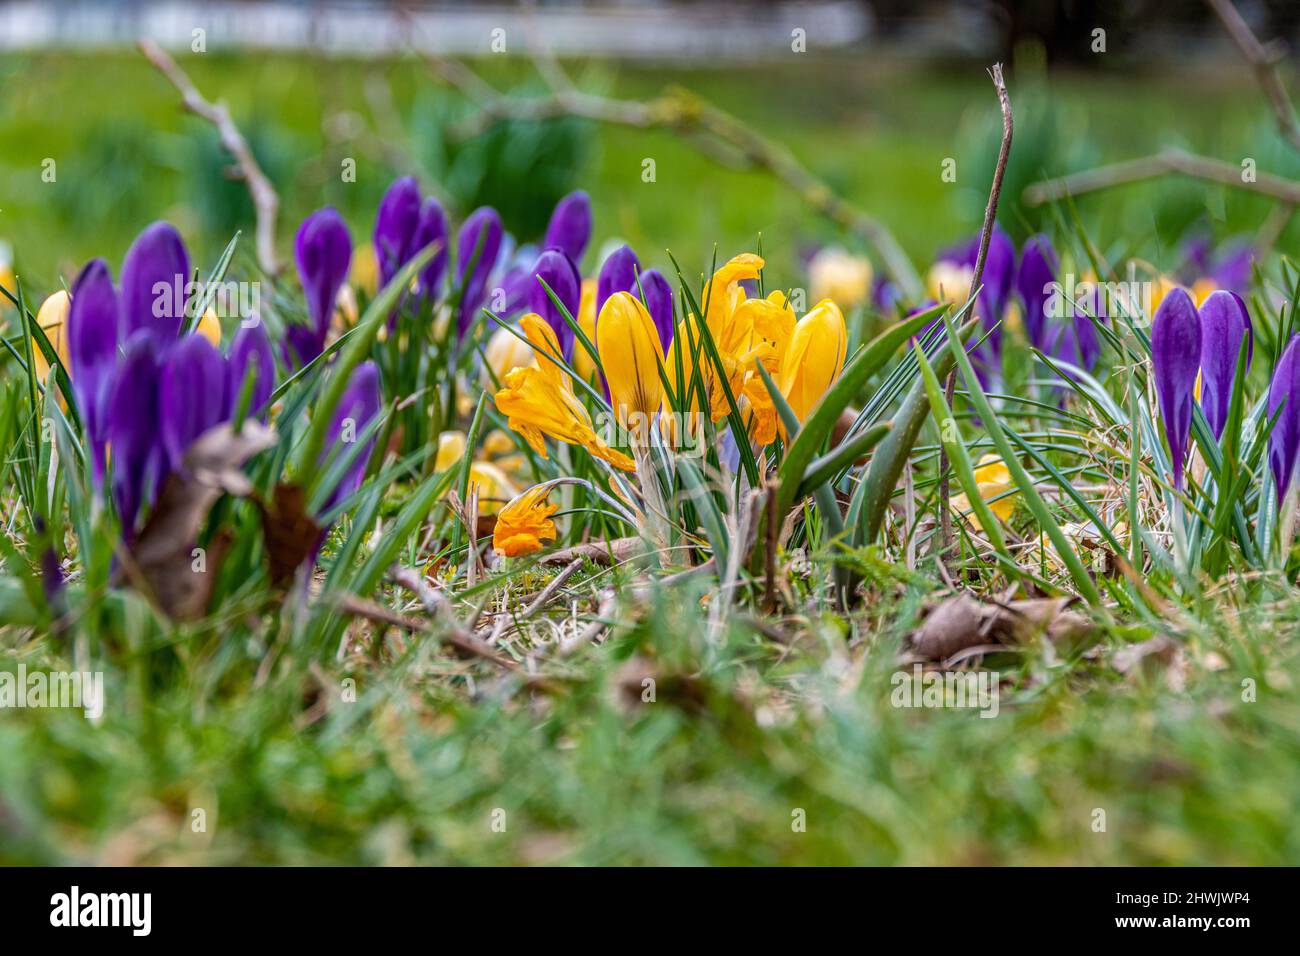 Krokusse kündigen den nahenden Frühling an, in kräftigen Farben blühen sie auf der Wiese Stock Photo